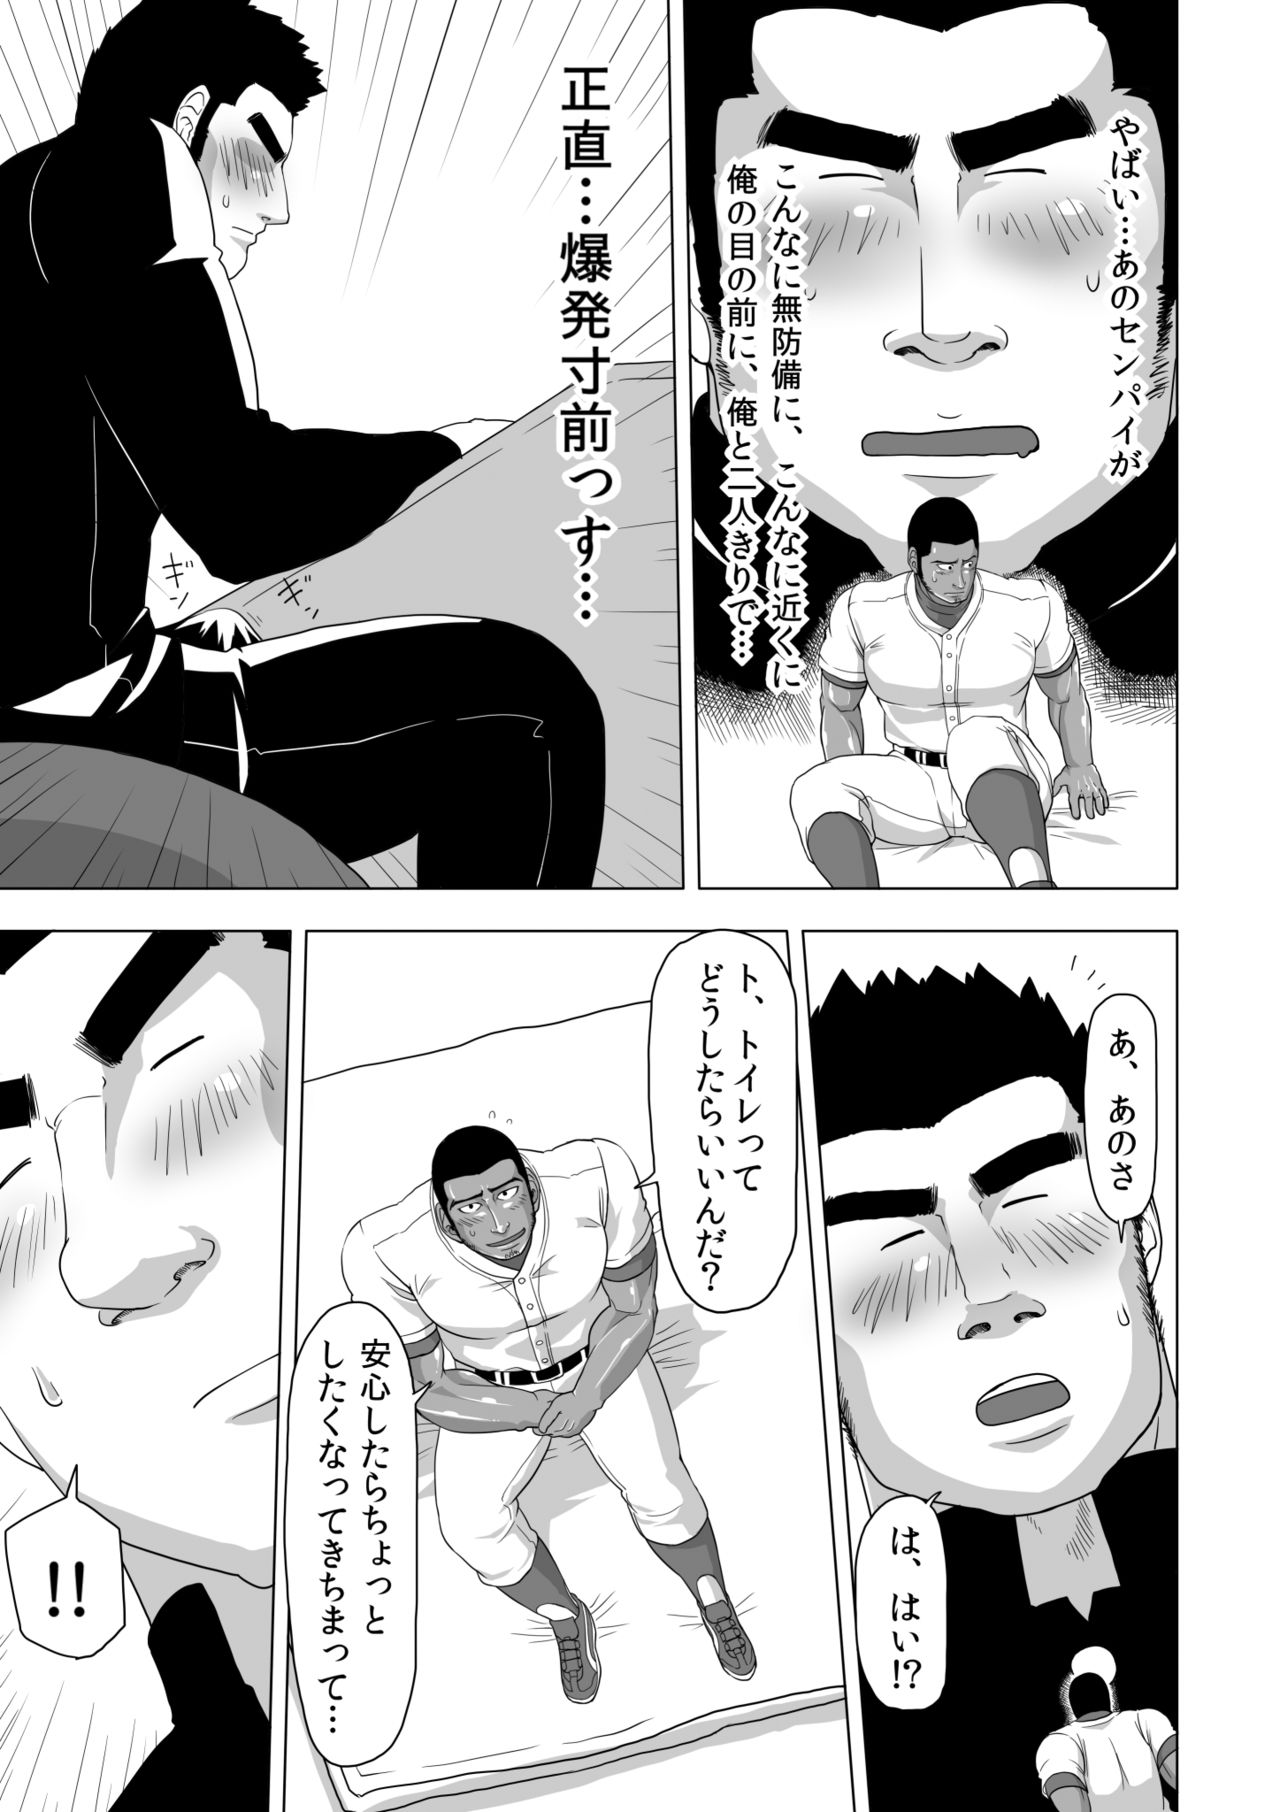 [Gakuranman] Too Cute and Tiny, my Nomura 学ラン  野球部のセンパイが好きすぎて